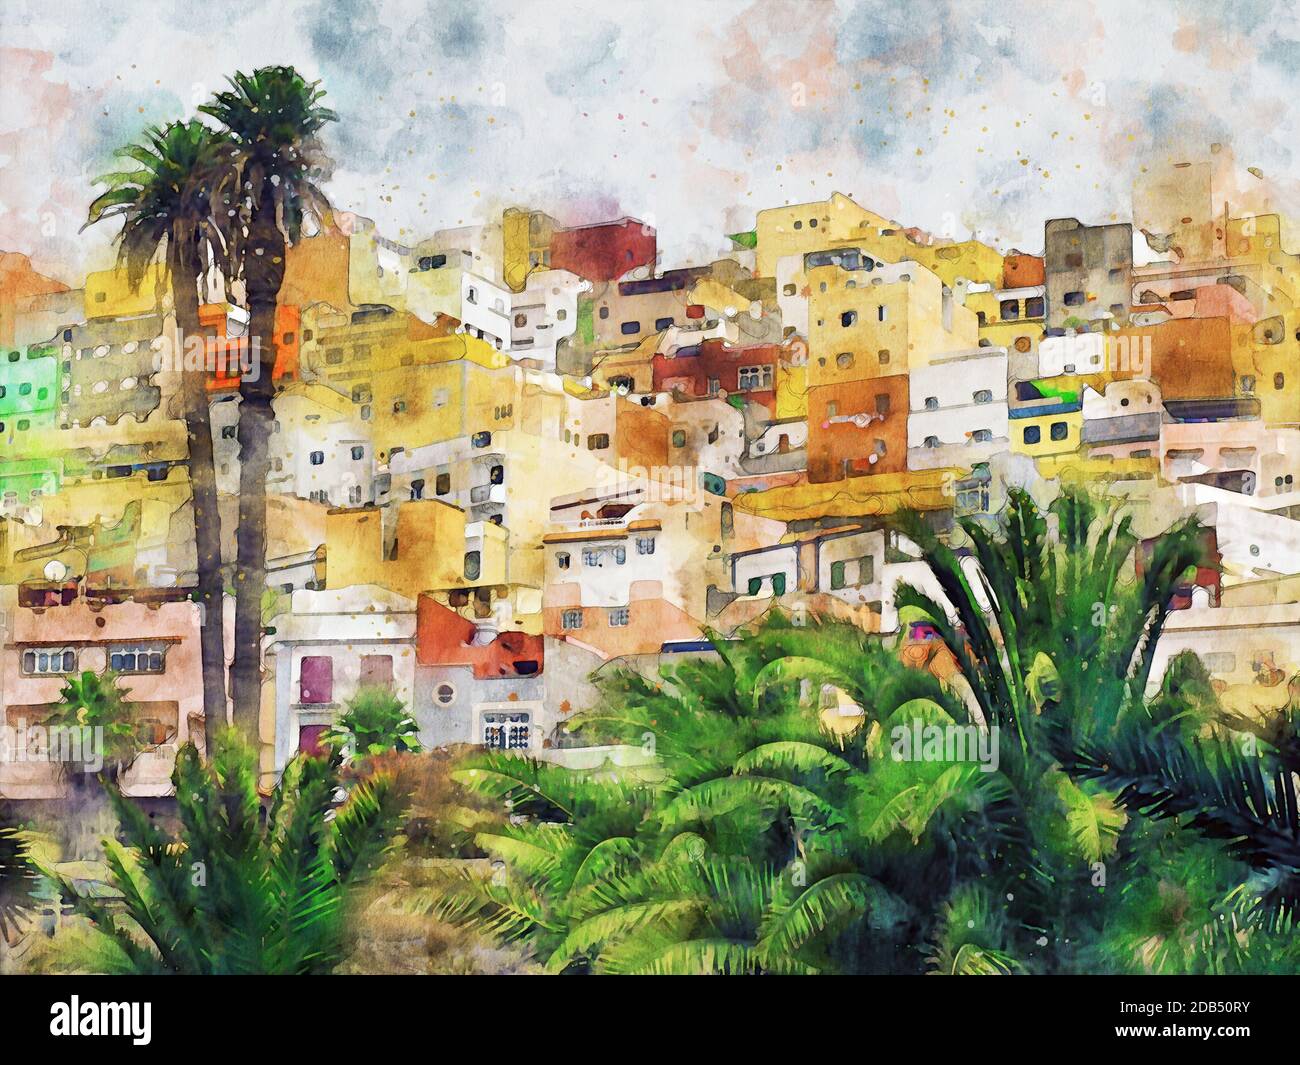 Vue aérienne du paysage urbain de Las Palmas de Gran Canaria. Illustration aquarelle. Banque D'Images